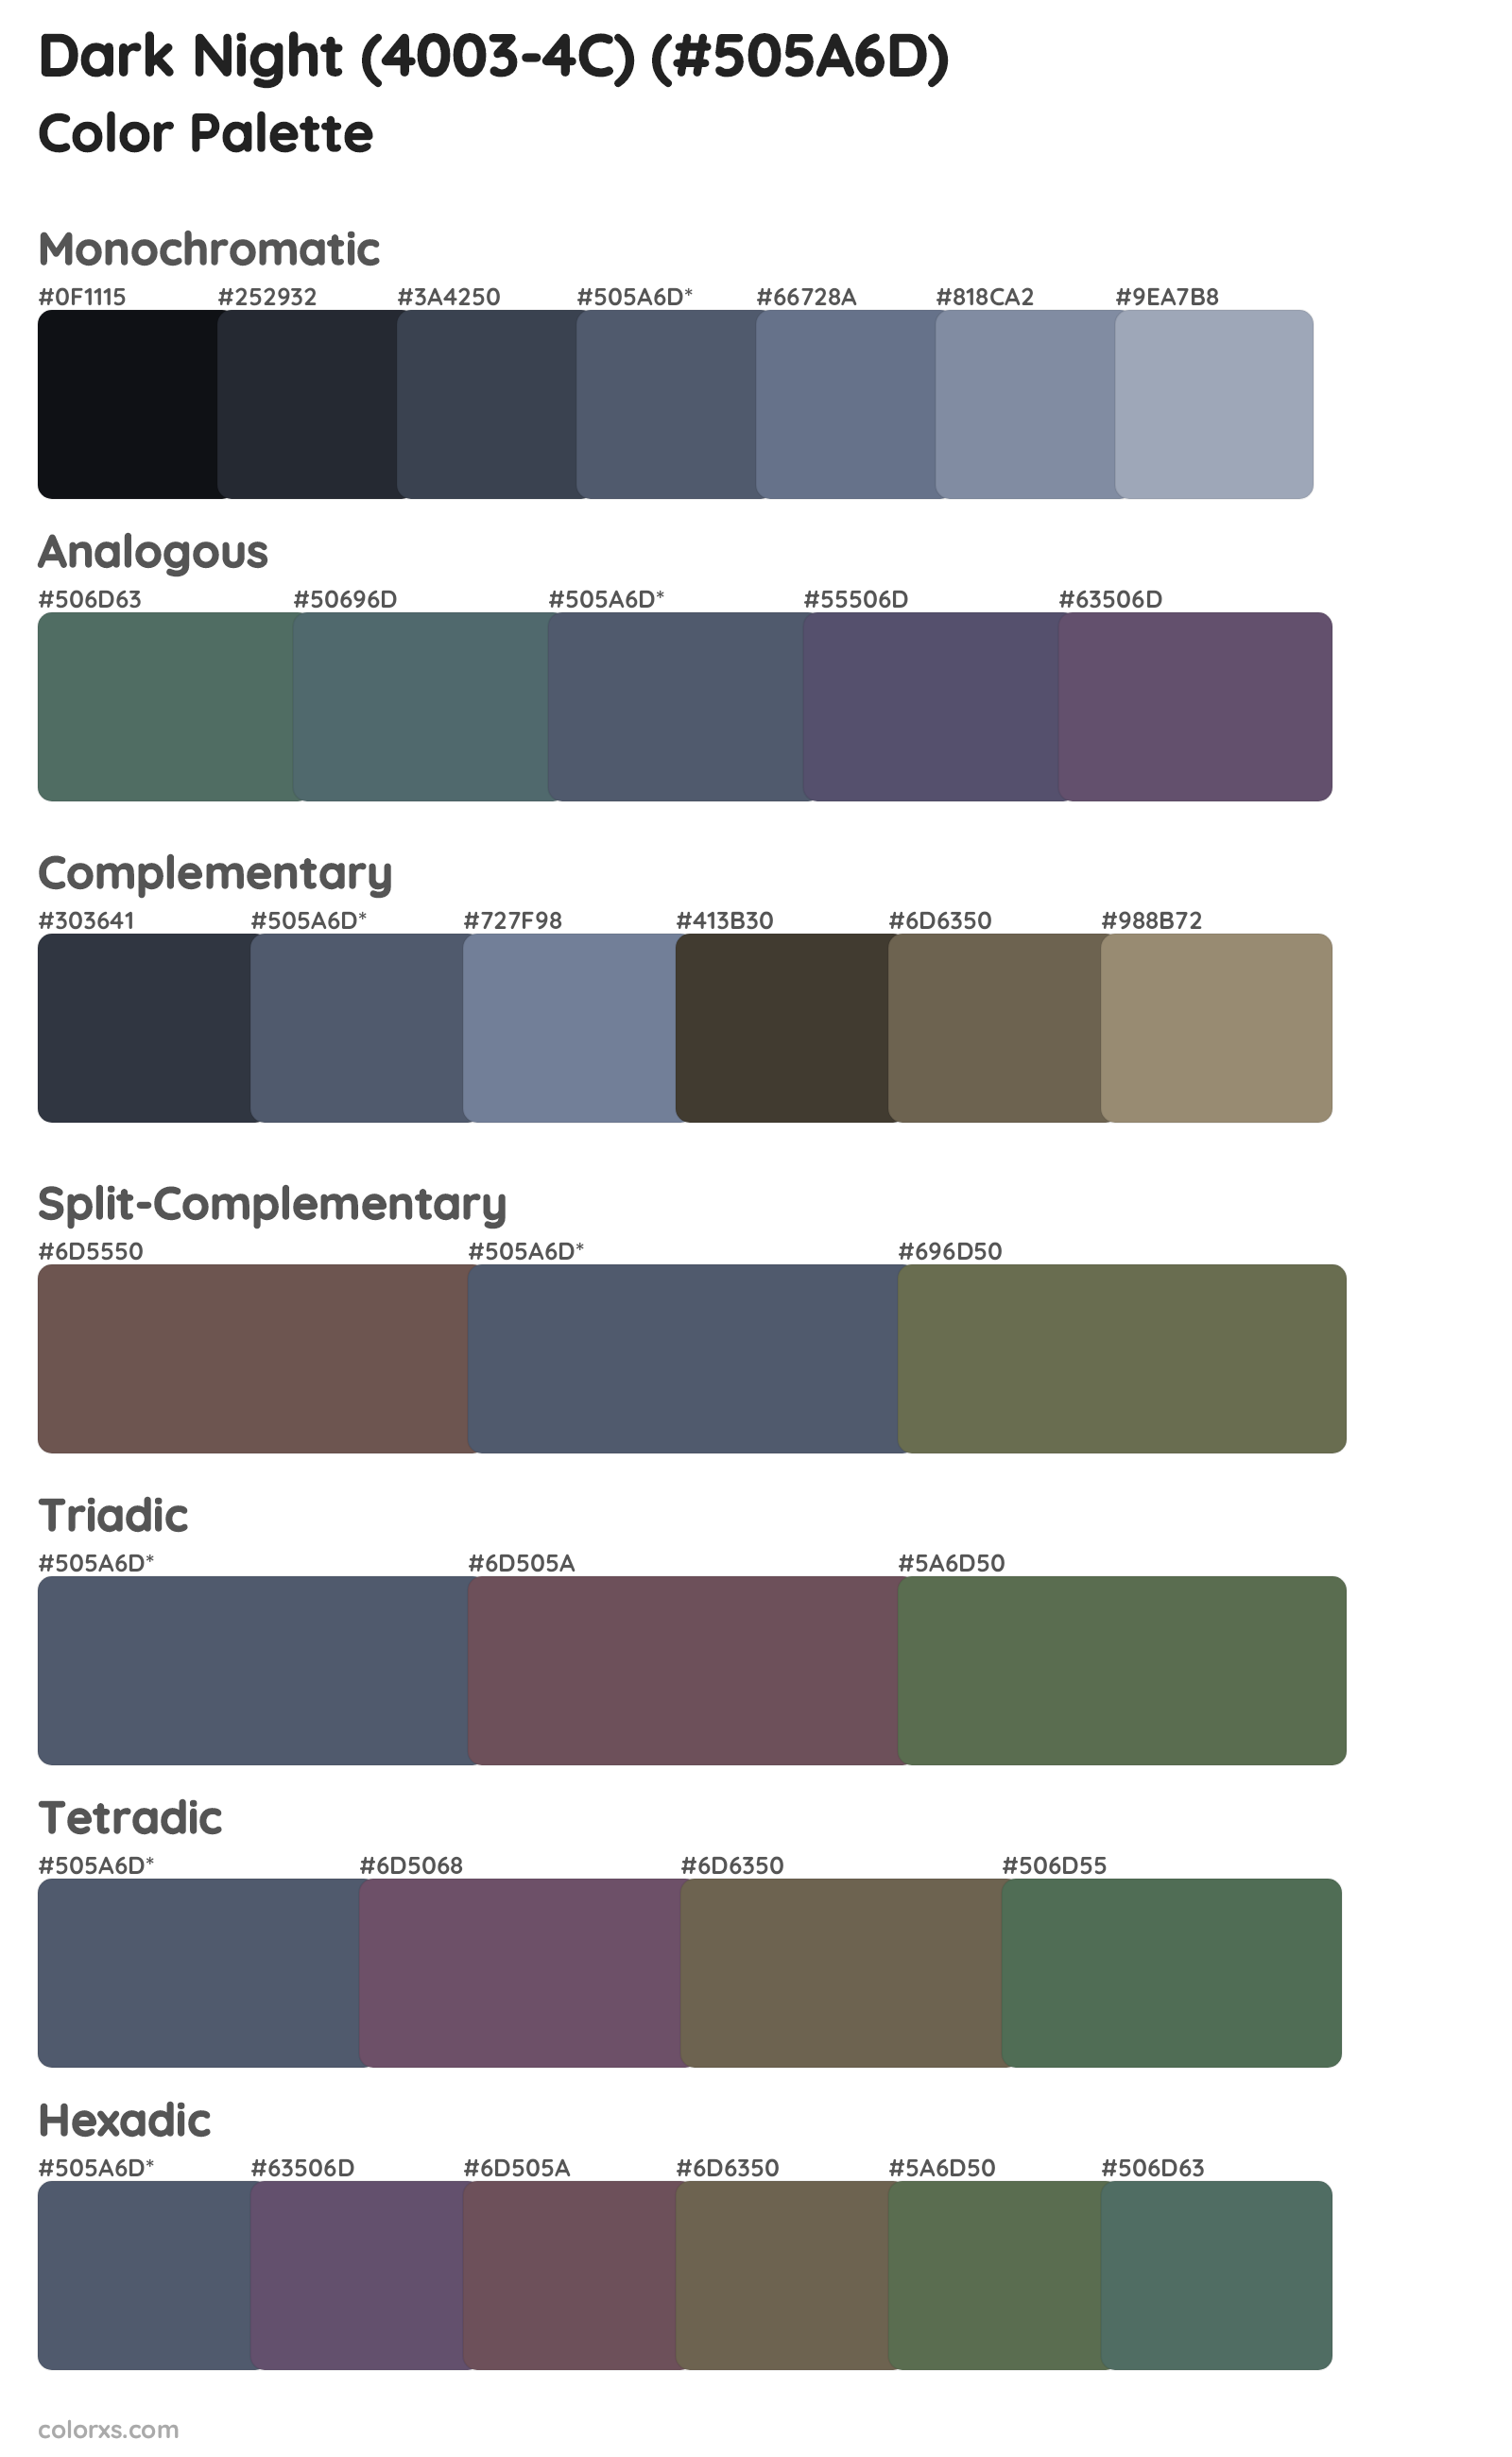 Dark Night (4003-4C) Color Scheme Palettes